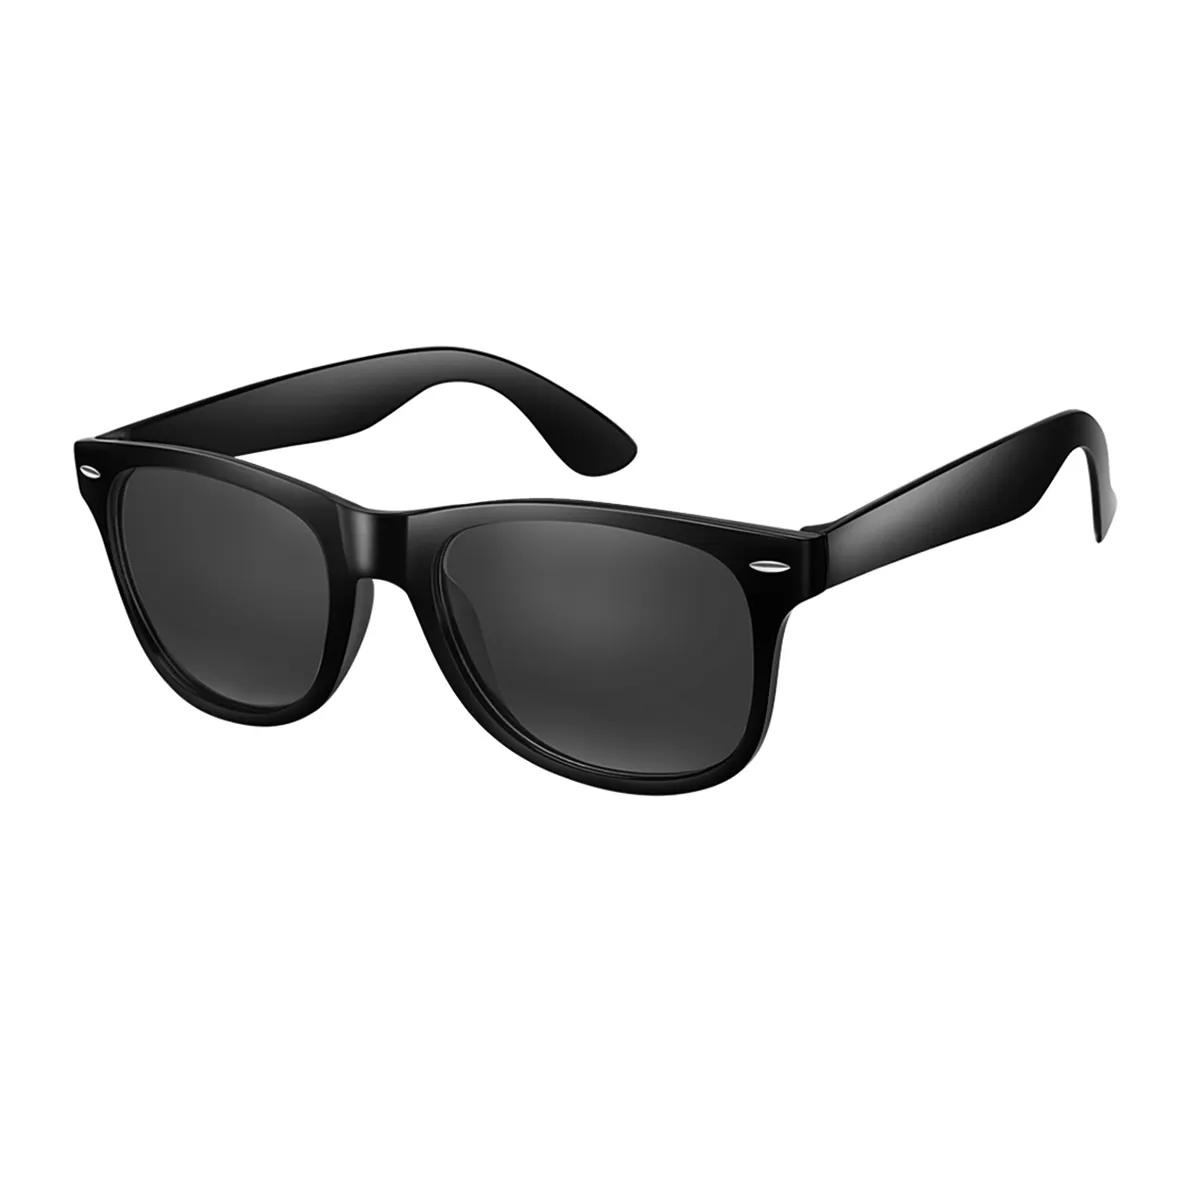 Eason - Browline Black Sunglasses for Men & Women